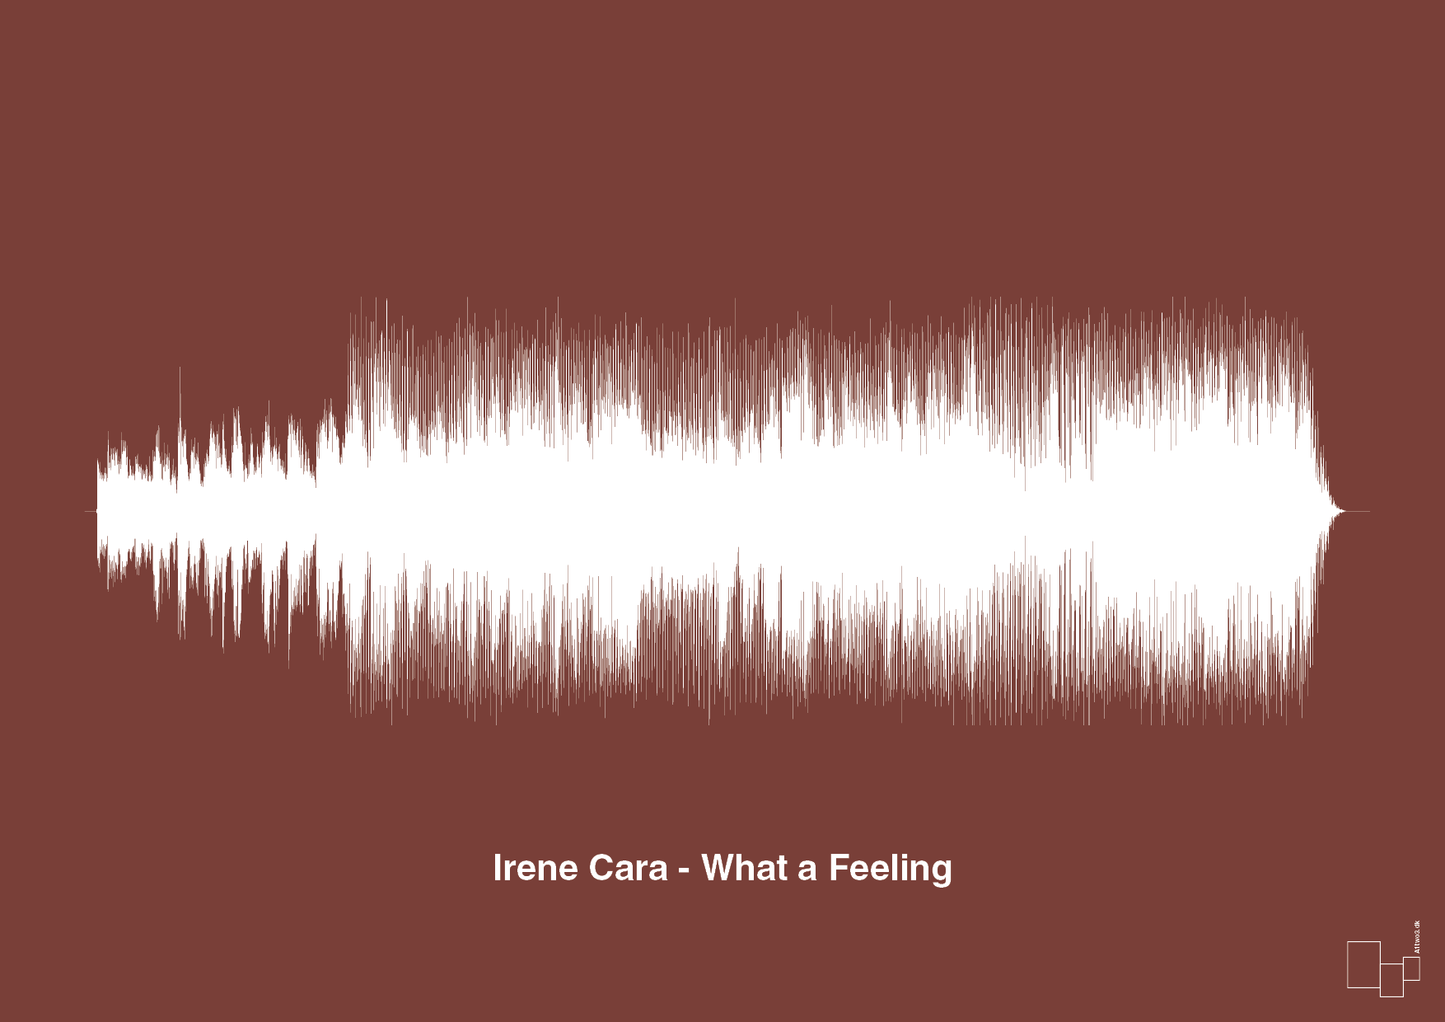 irene cara - what a feeling - Plakat med Musik i Red Pepper